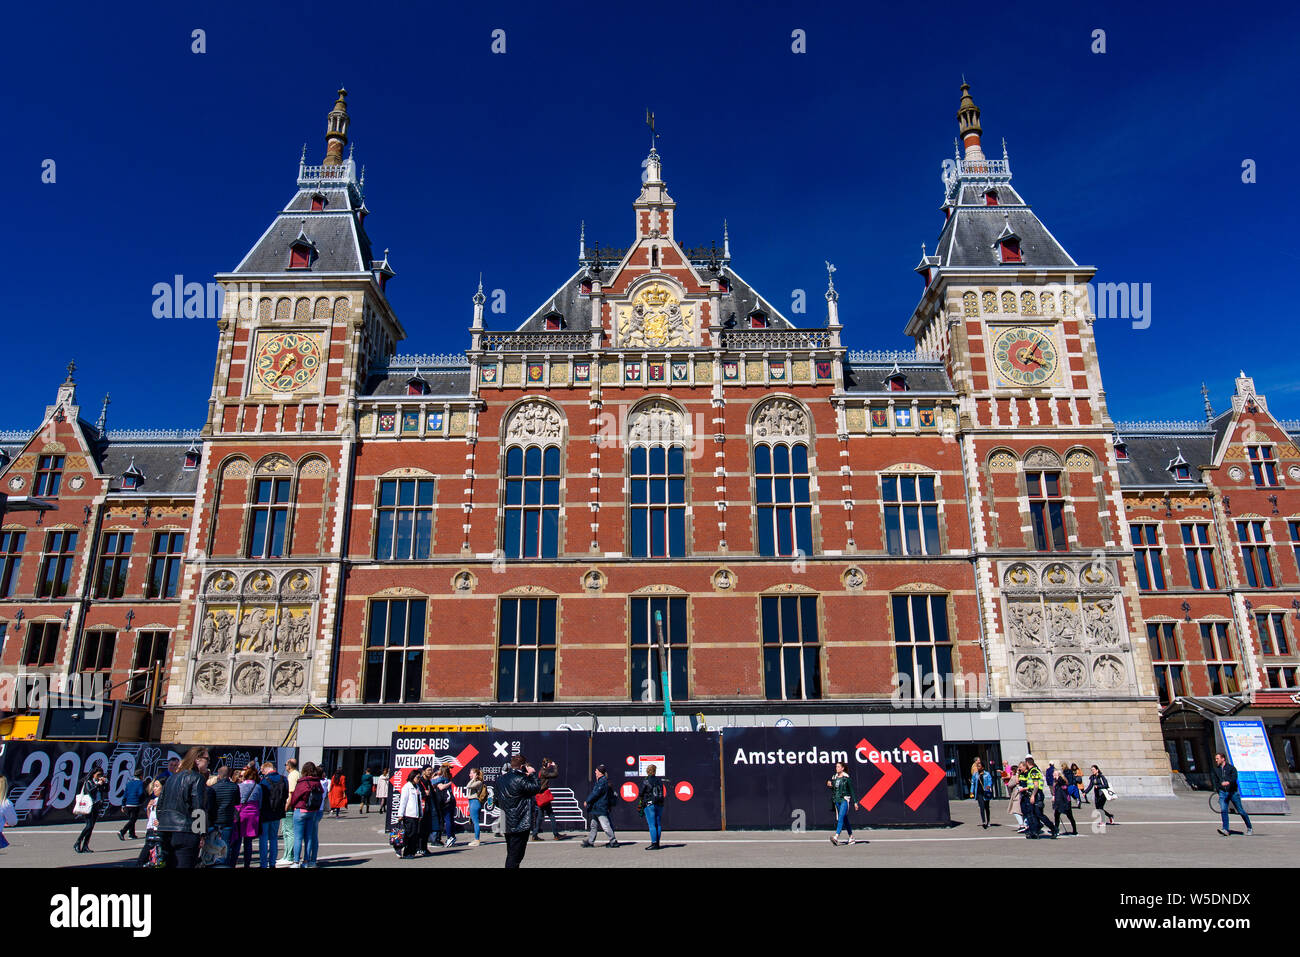 La stazione centrale di Amsterdam, la più grande stazione ferroviaria di Amsterdam, Paesi Bassi Foto Stock